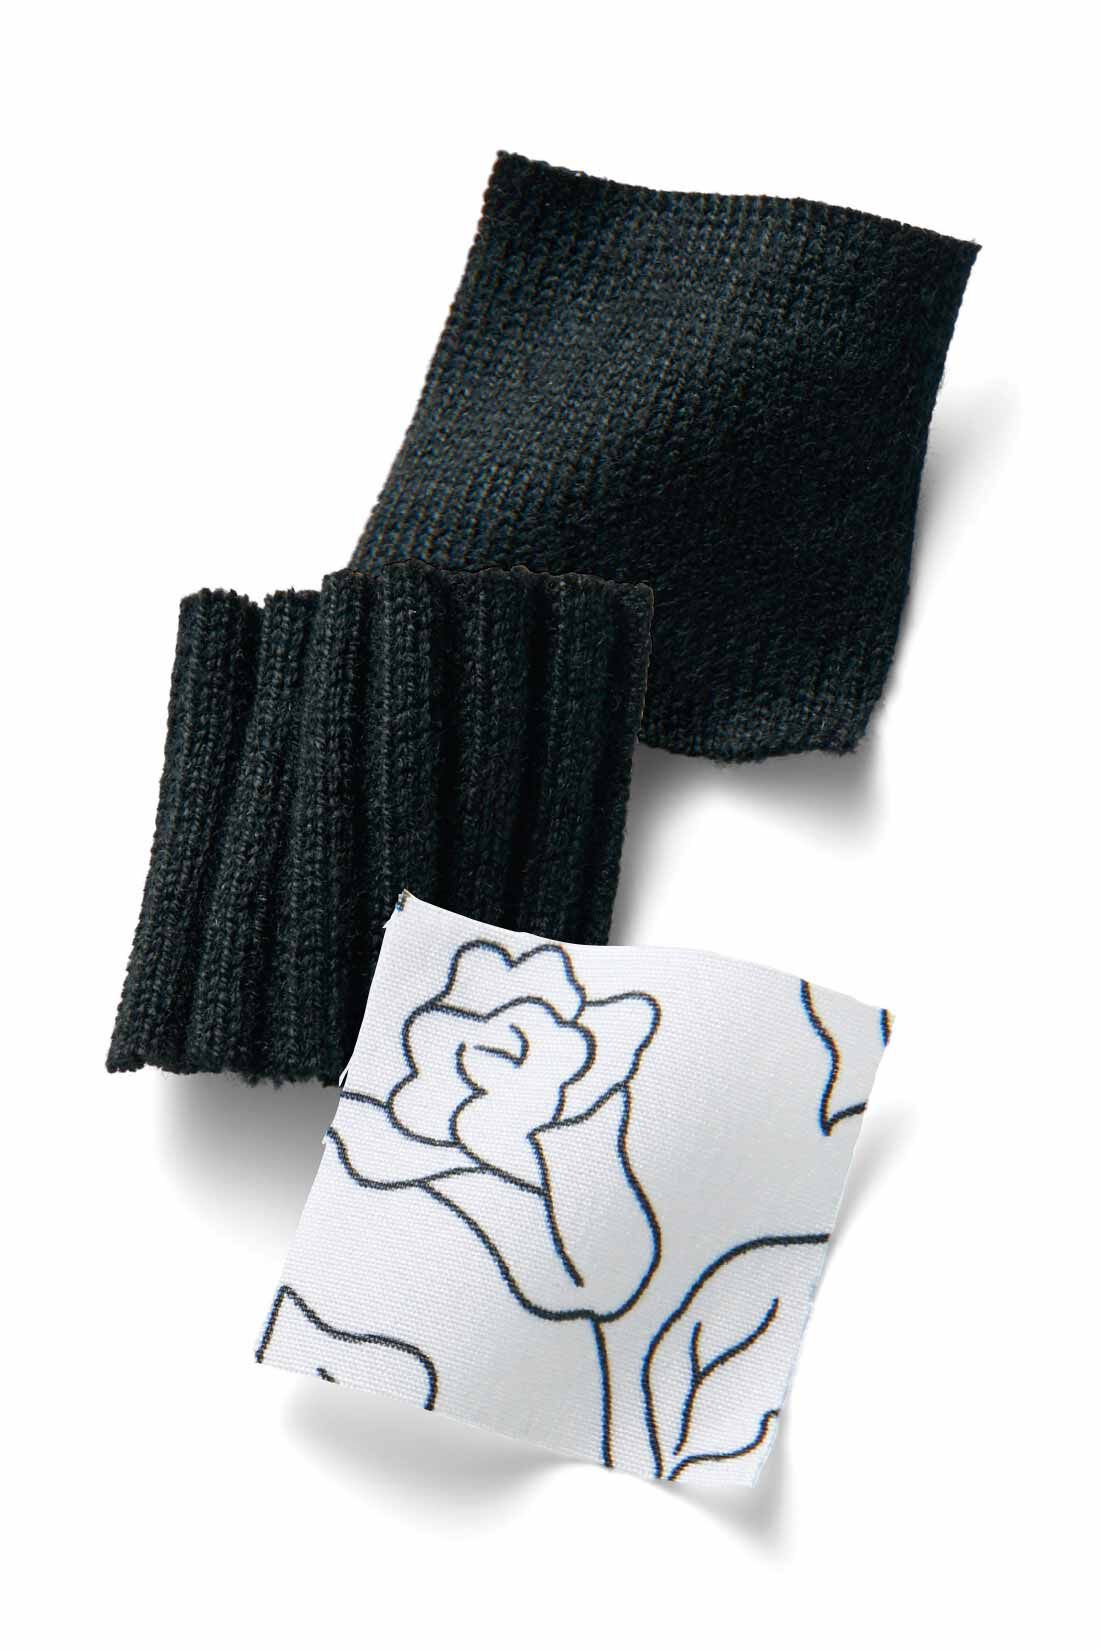 Real Stock|IEDIT[イディット]　シックに華やぐアンサンブルセットアップ〈ブラック×ホワイト〉|ほどよい厚みのニットは、トップスがリブ編み、カーデは天じく編みに。スカートはしなやかな布はく素材。